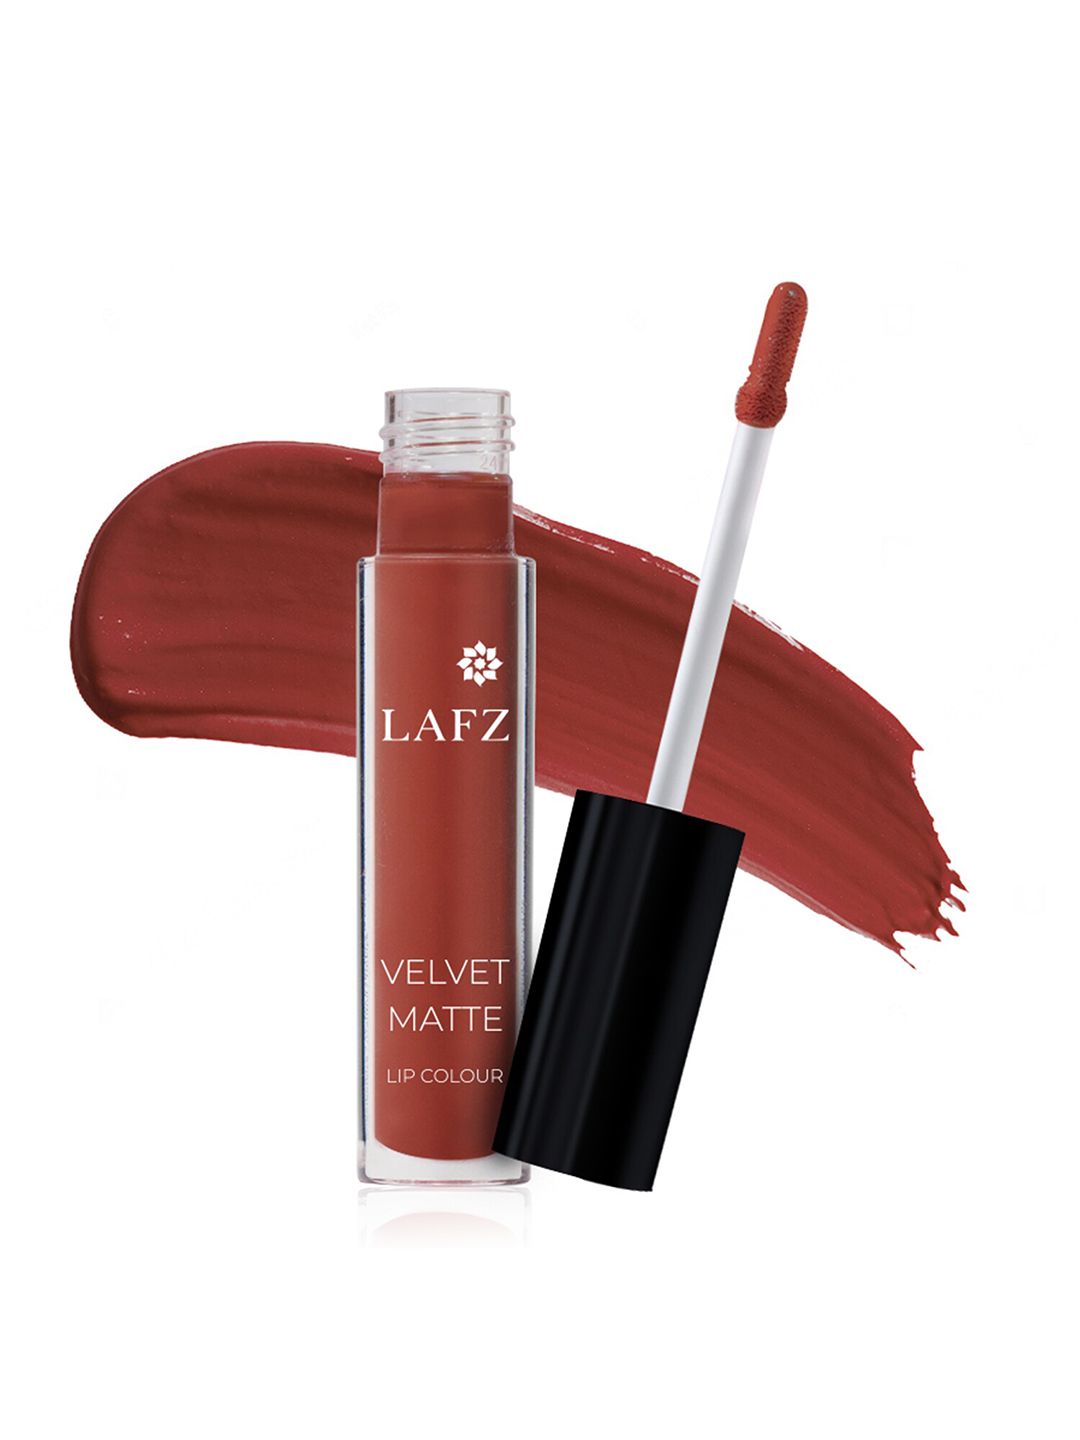 LAFZ Velvet Matte Lip Color - Brick Red 5.5 ml Price in India